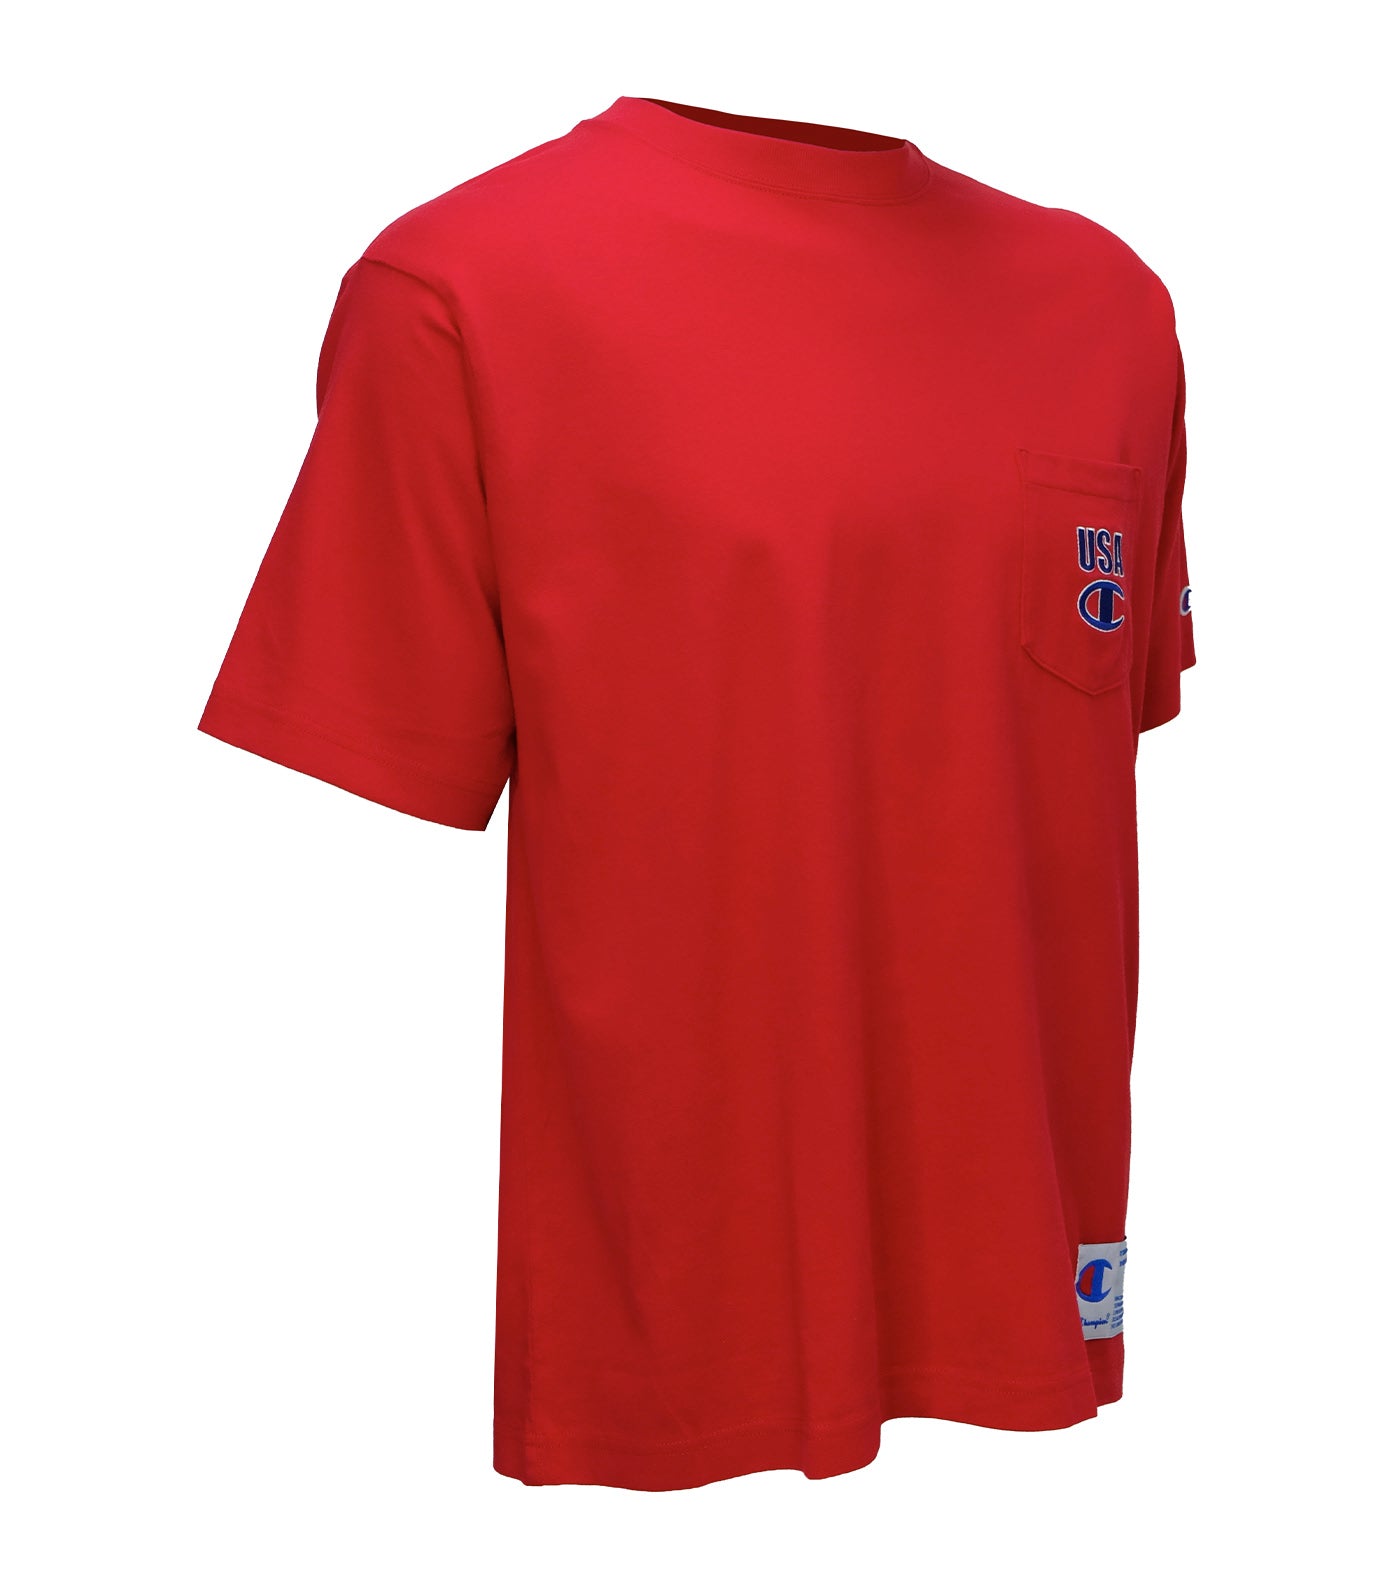 Japan Line Short Sleeve Pocket T-Shirt Red